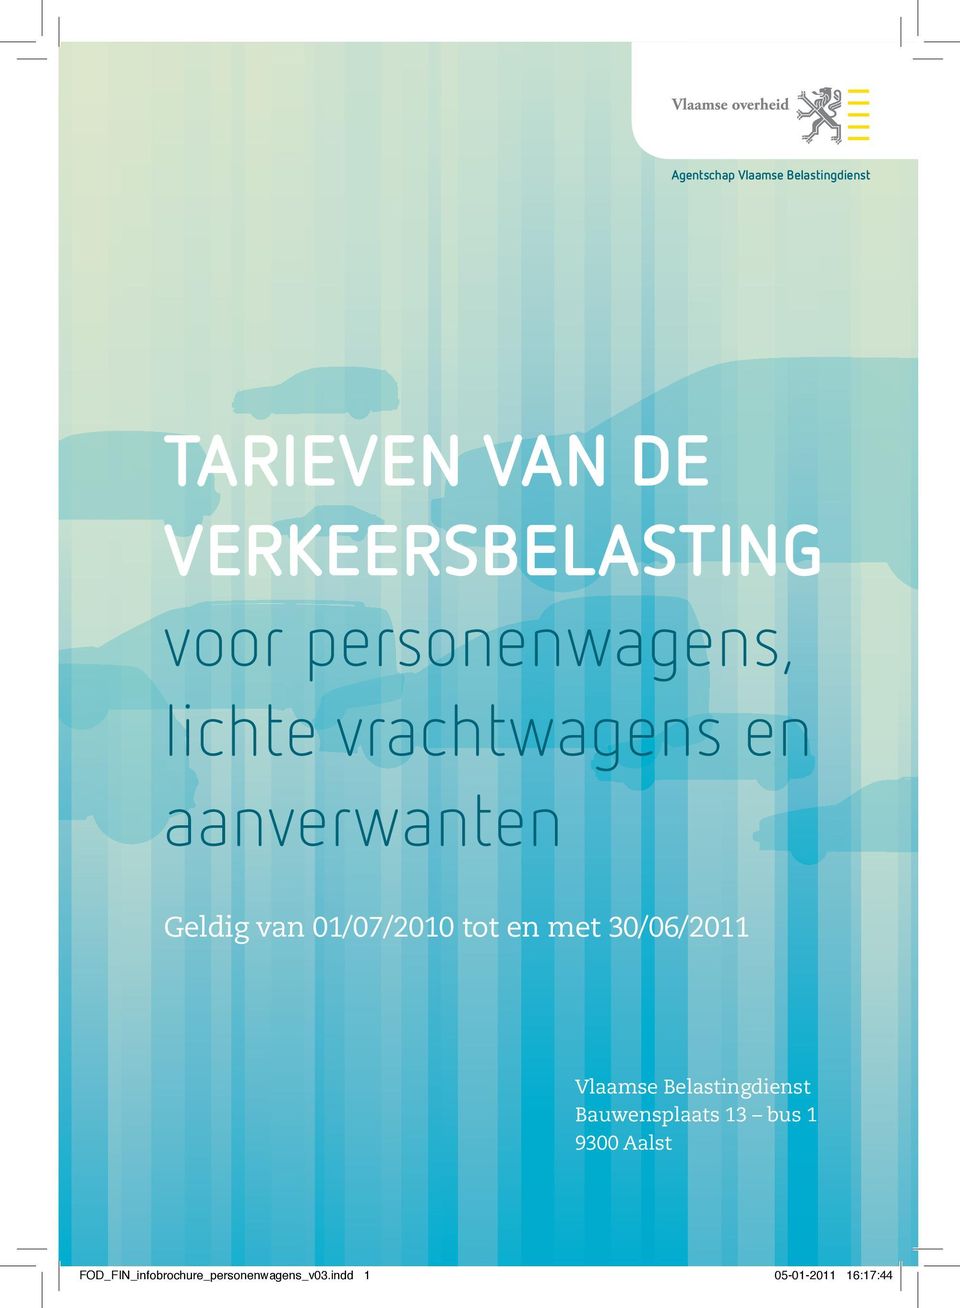 tot en met 30/06/2011 Vlaamse Belastingdienst Bauwensplaats 13 bus 1 9300